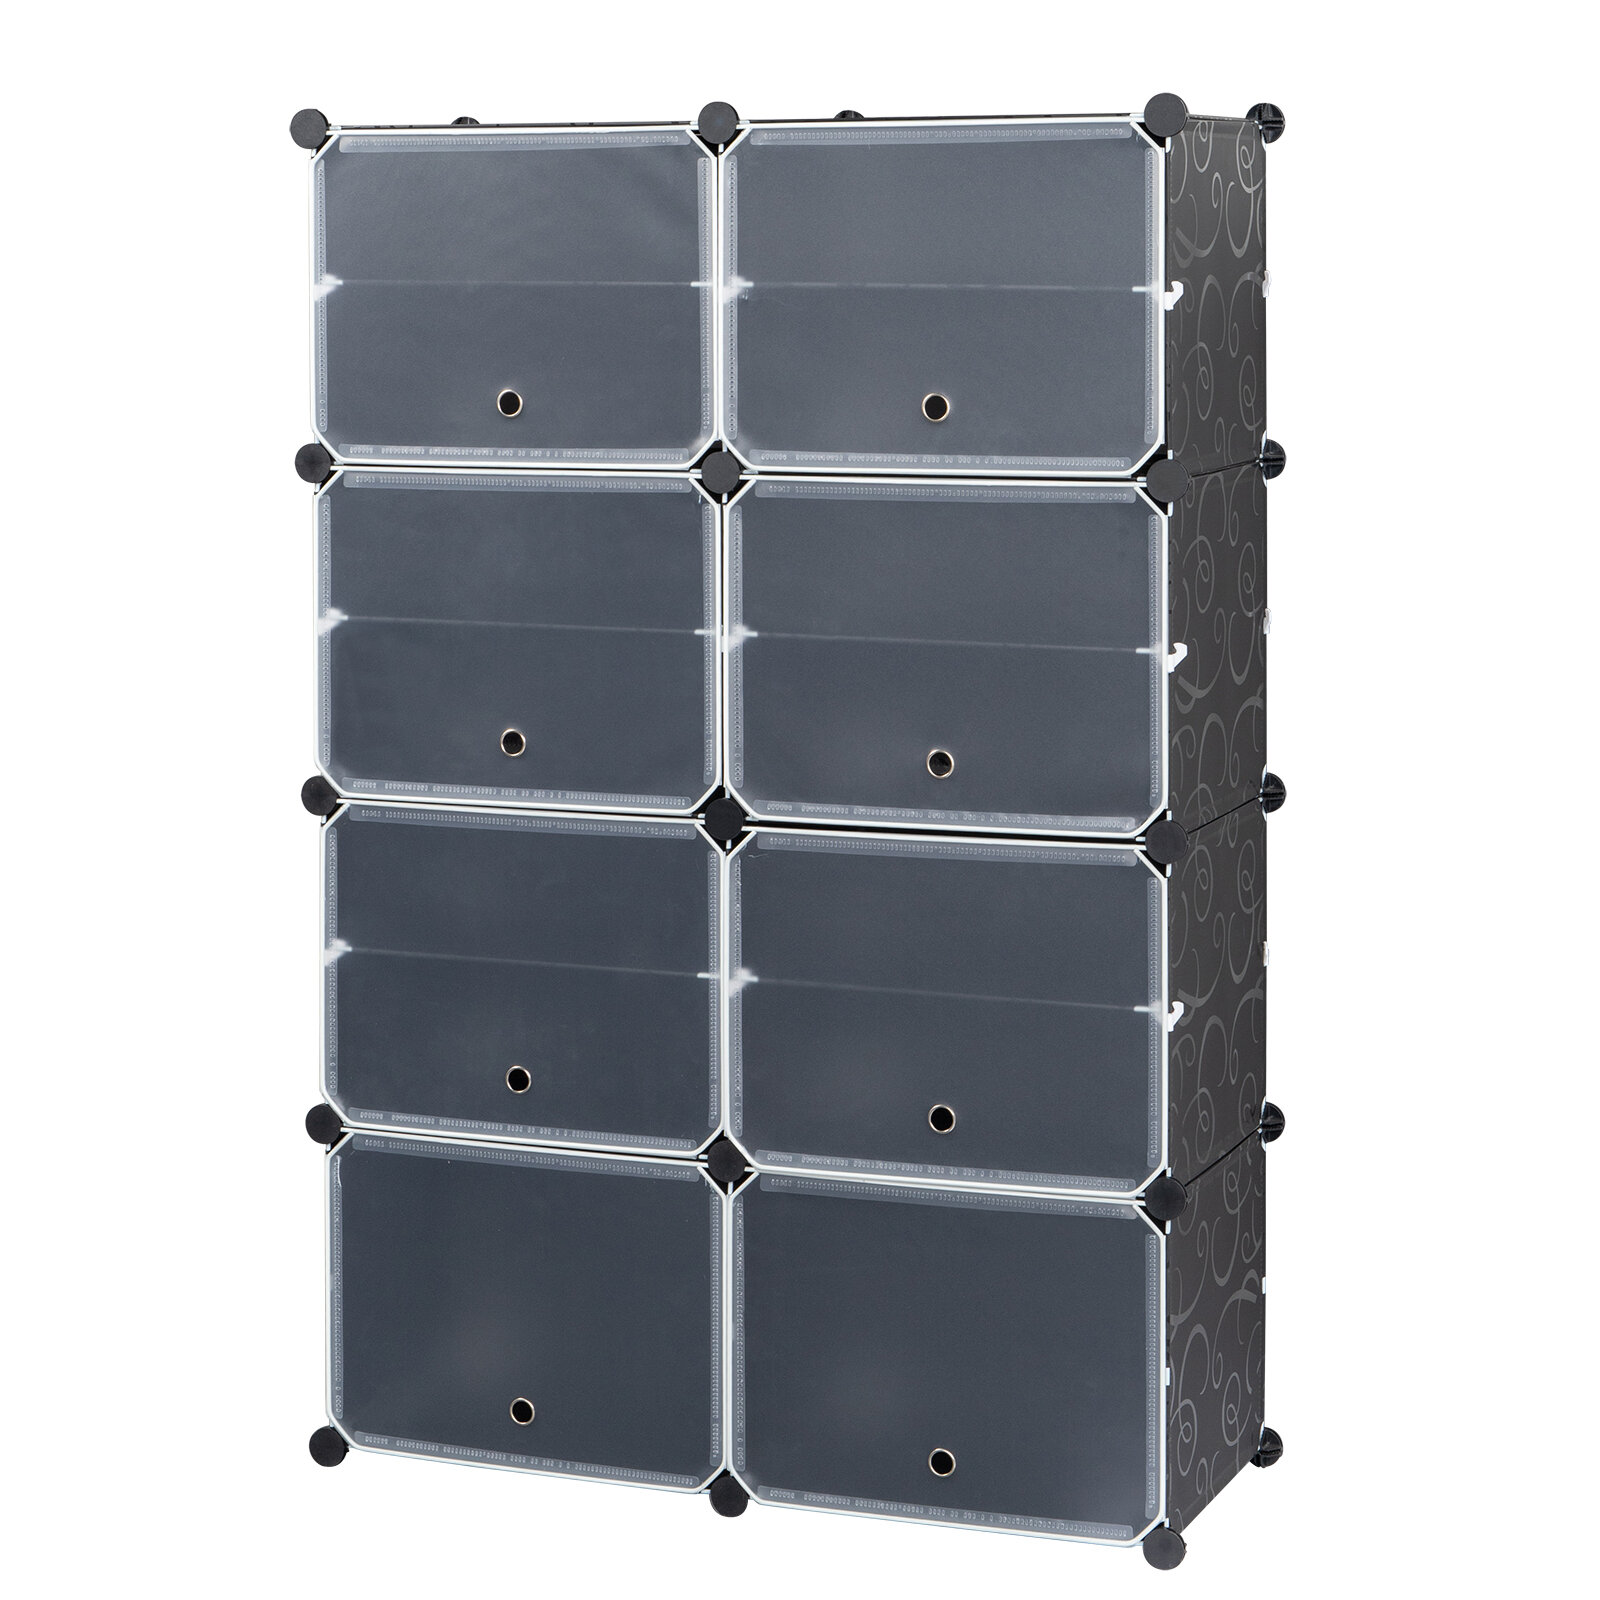 https://assets.wfcdn.com/im/51467483/compr-r85/1468/146835282/28-pair-shoe-storage-cabinet.jpg